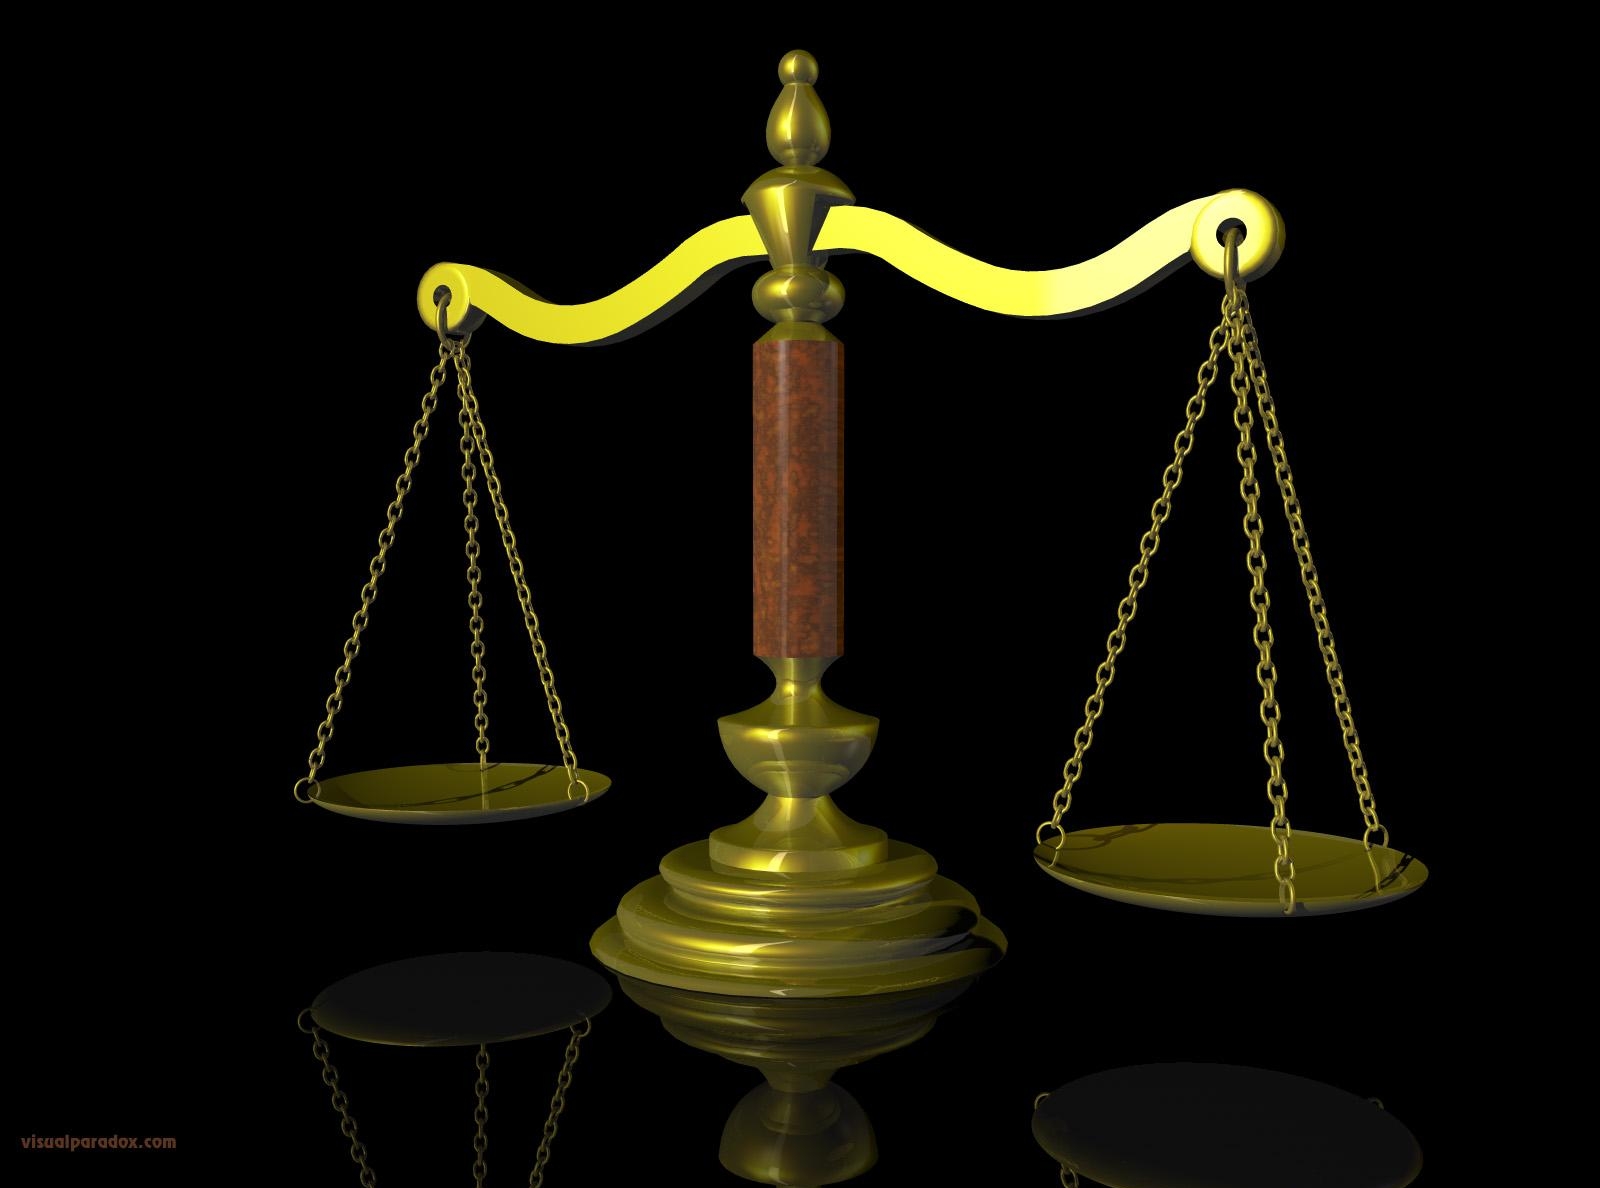 Весы, как символ справедливости федерального суда США